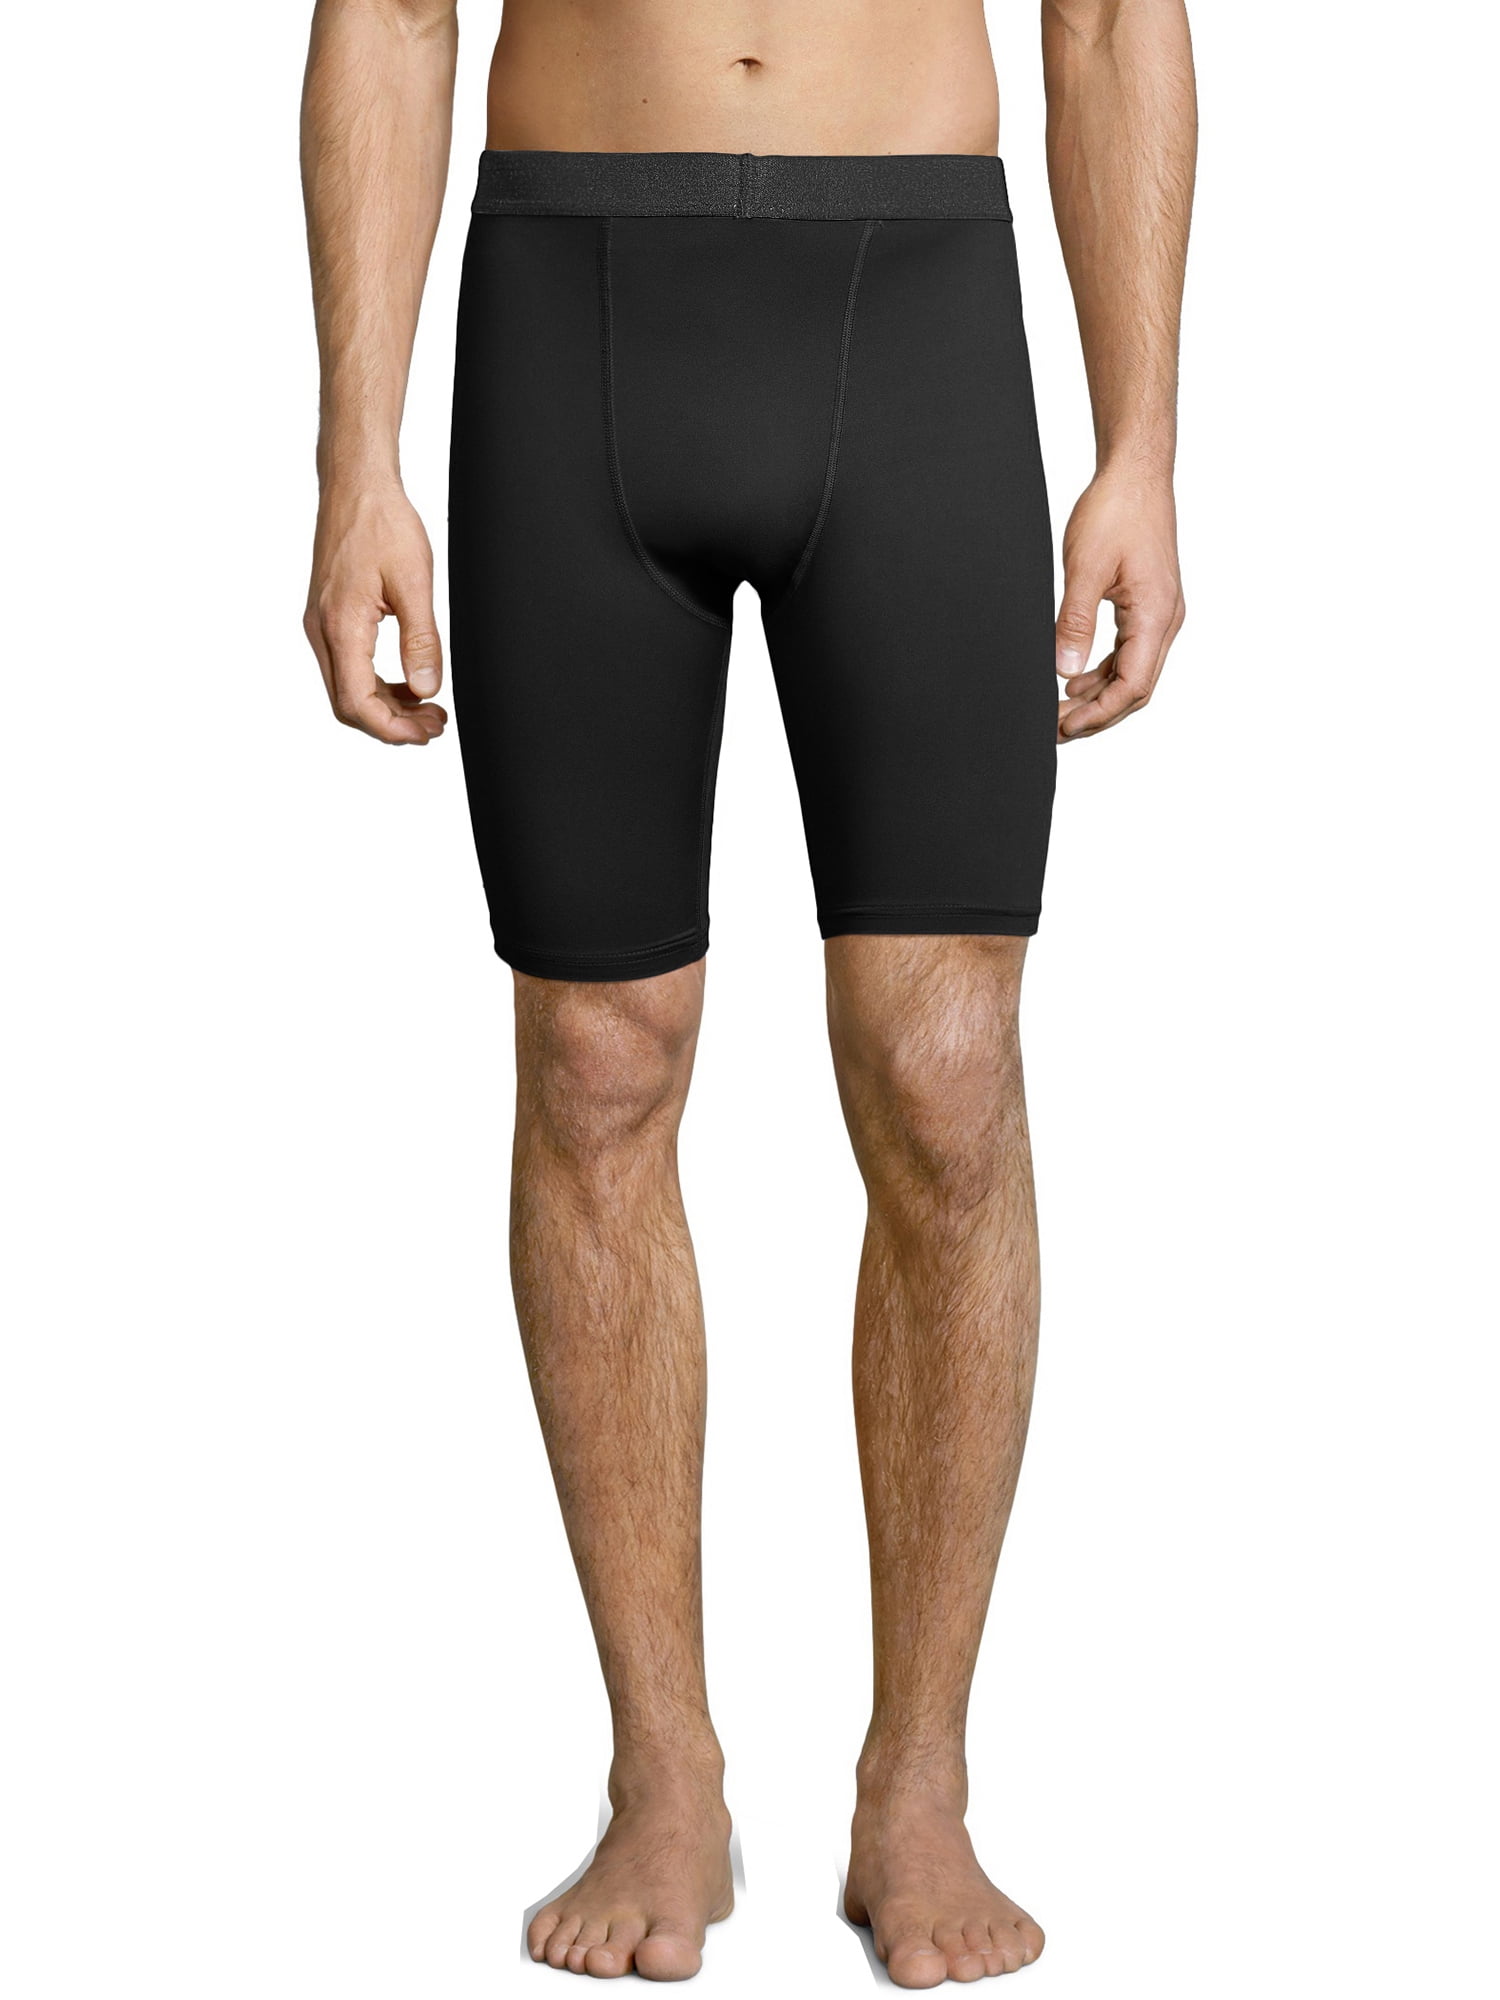 Sport Men's and Men's Compression Shorts, up to 2XL - Walmart.com